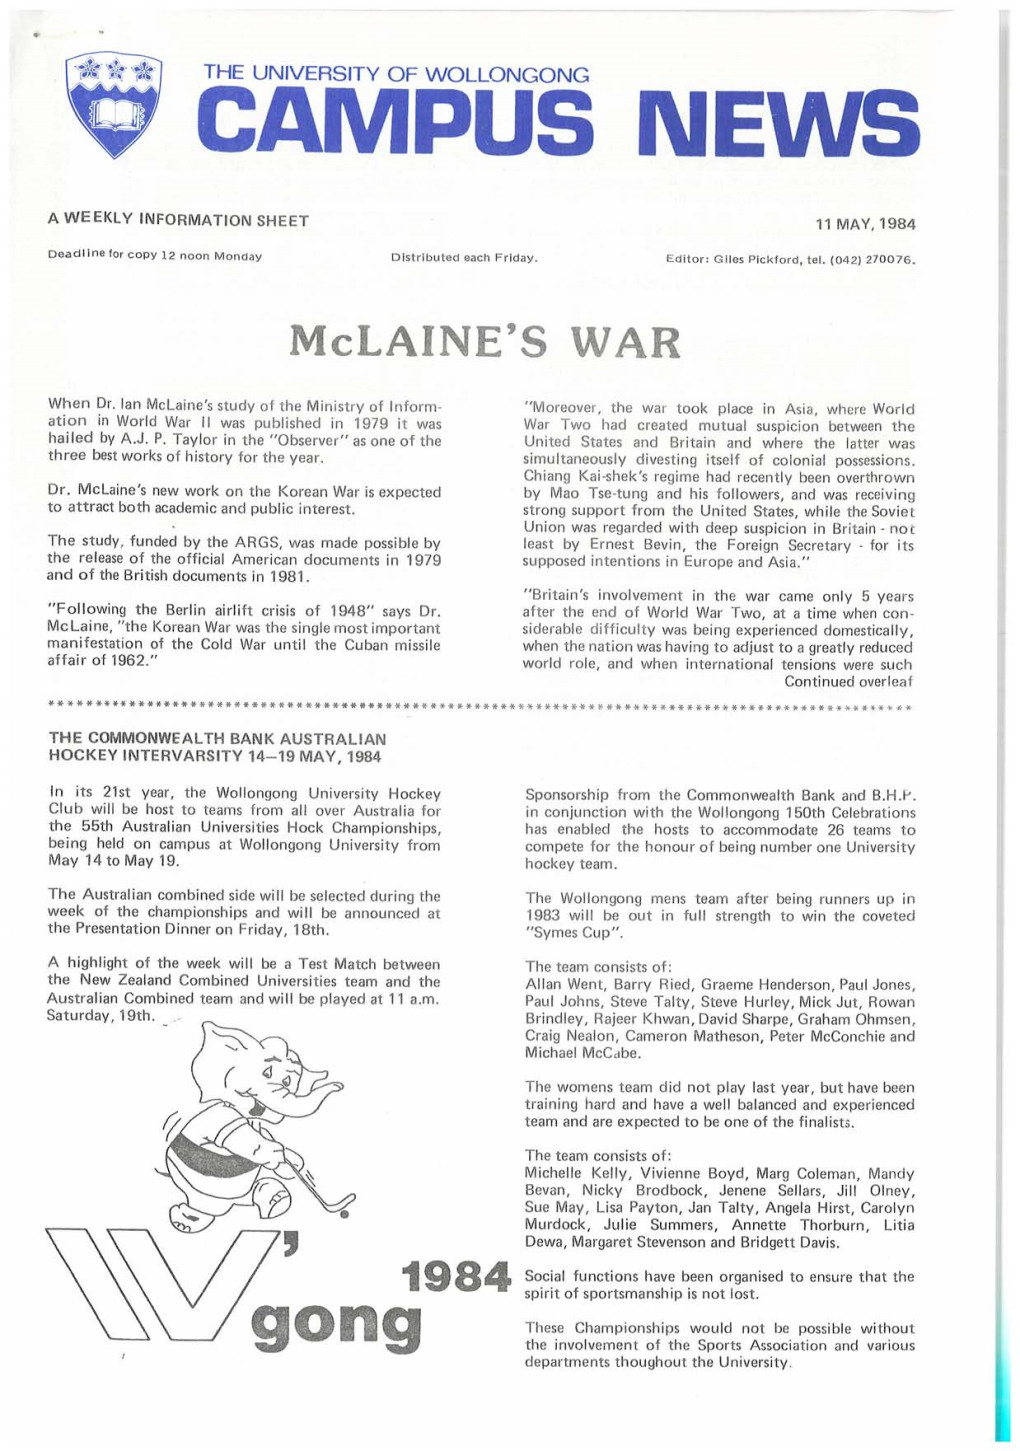 University of Wollongong Campus News 11 May 1984